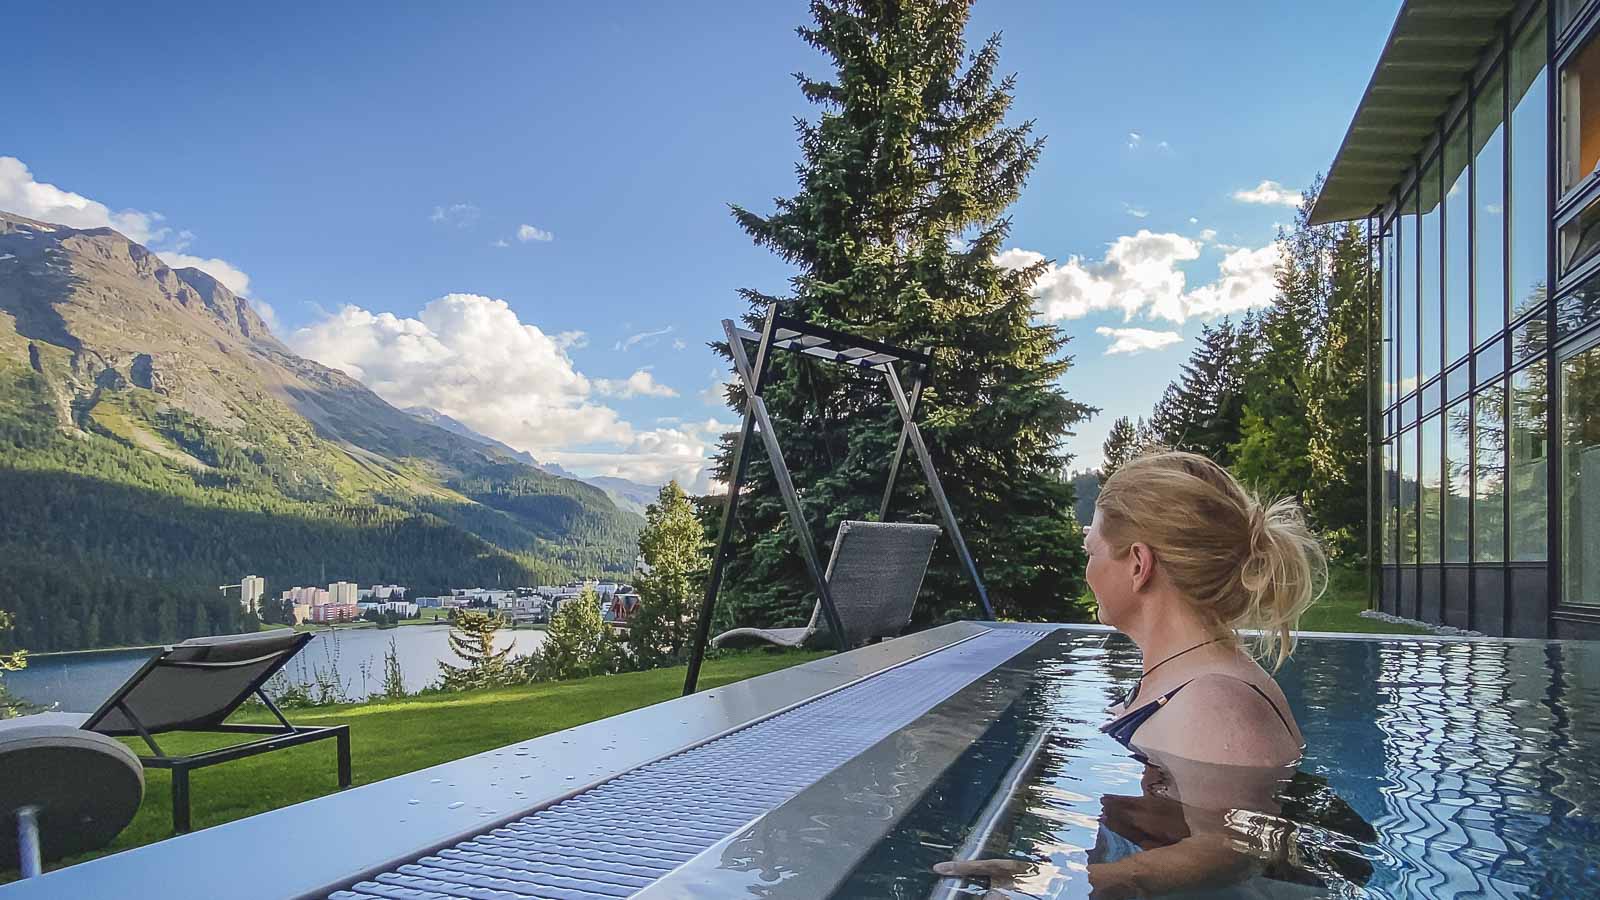 Looking over St. Moritz in summer